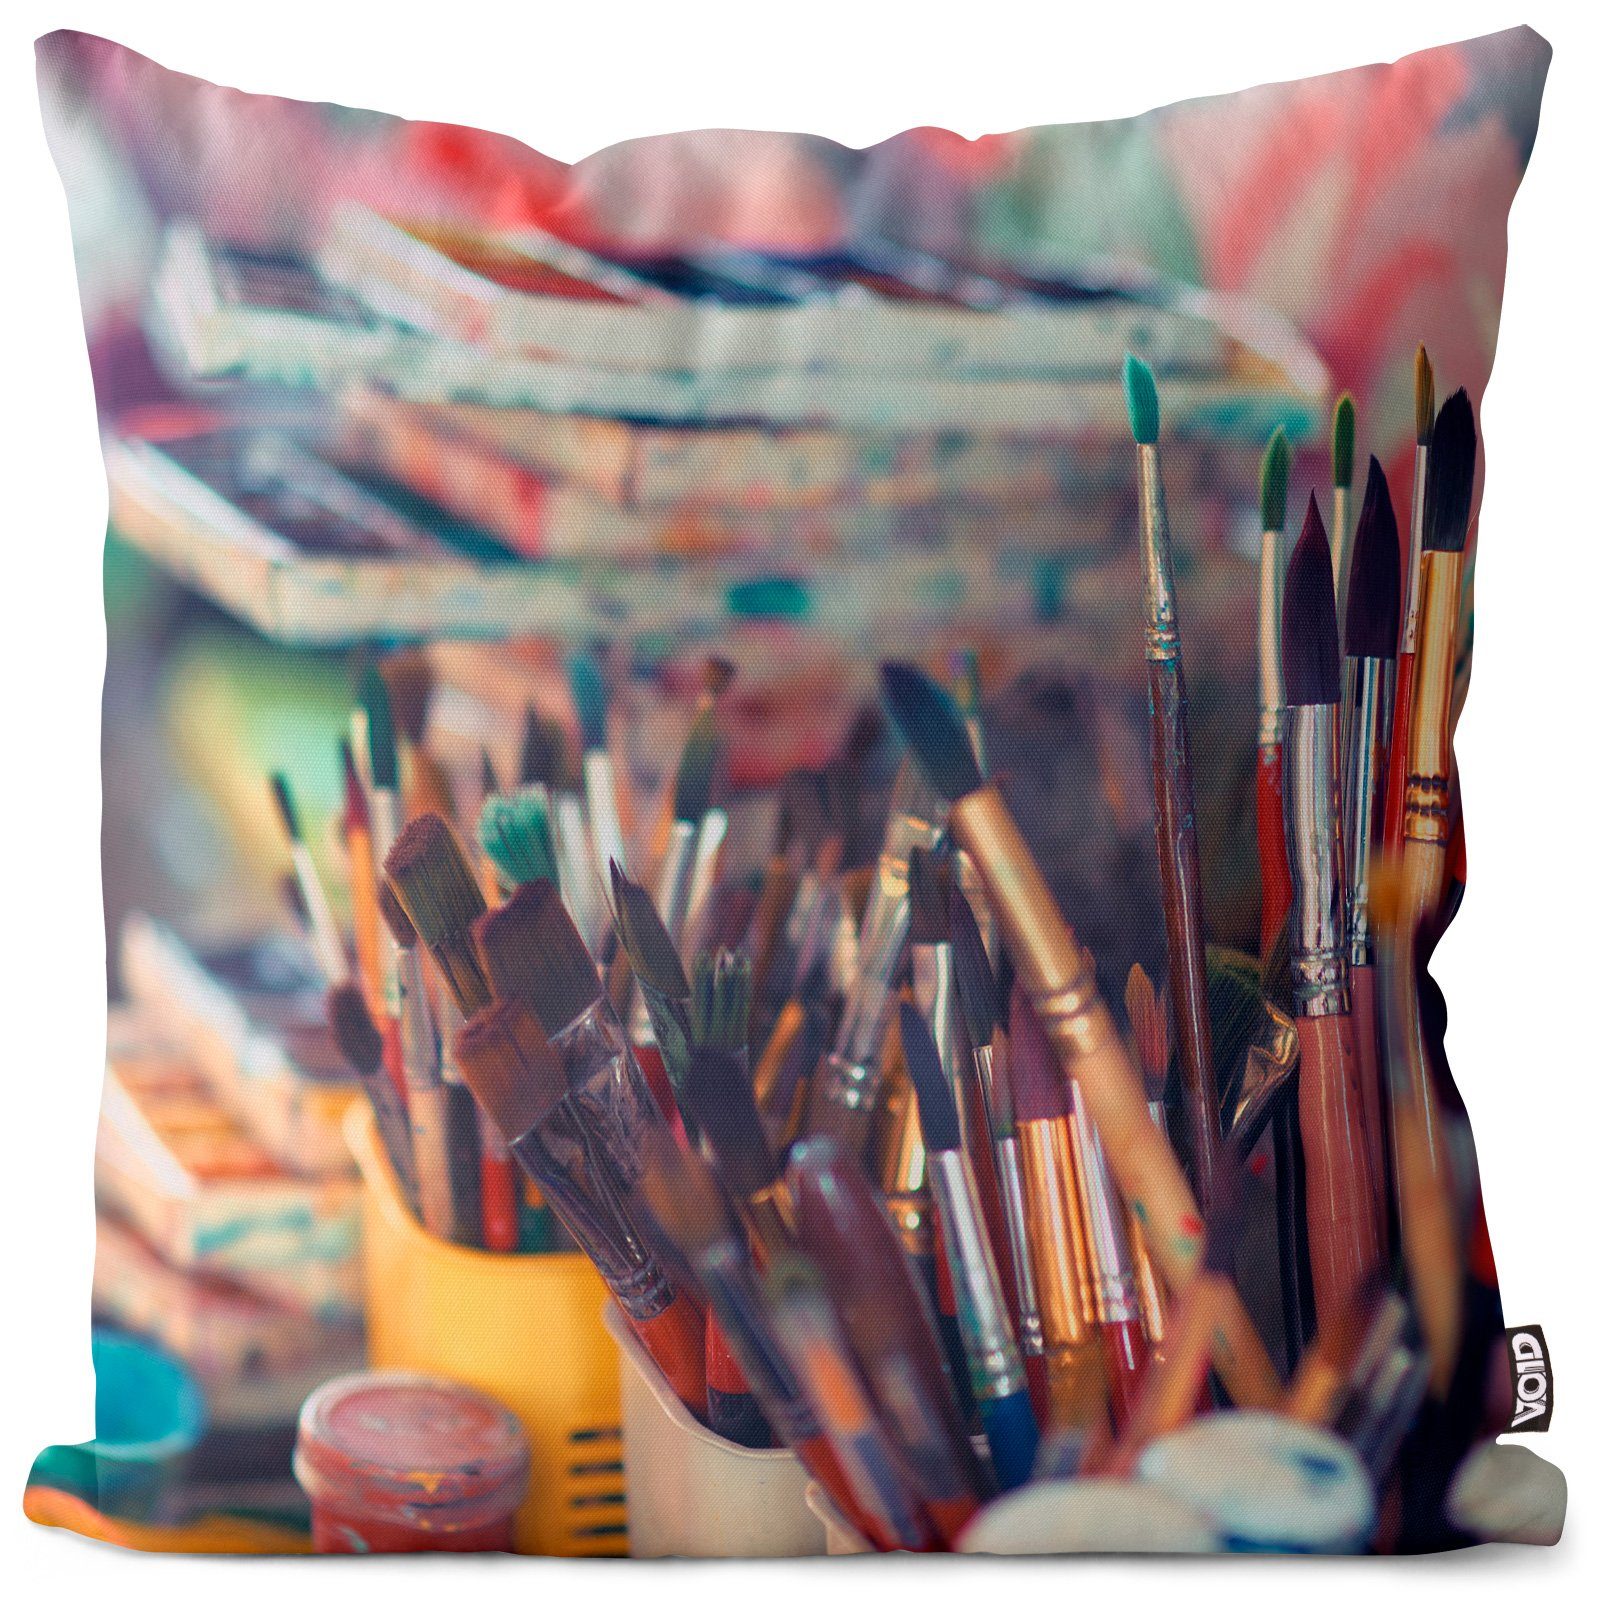 Farbtopf Pinsel Öl Ölfarben (1 Farben VOID Malen Zeichnen lernen Wasserfarben Palette Stück), Acryl Aquarell Hobby Kissenbezug, Leinwand Sofa-Kissen Kunst Malerei